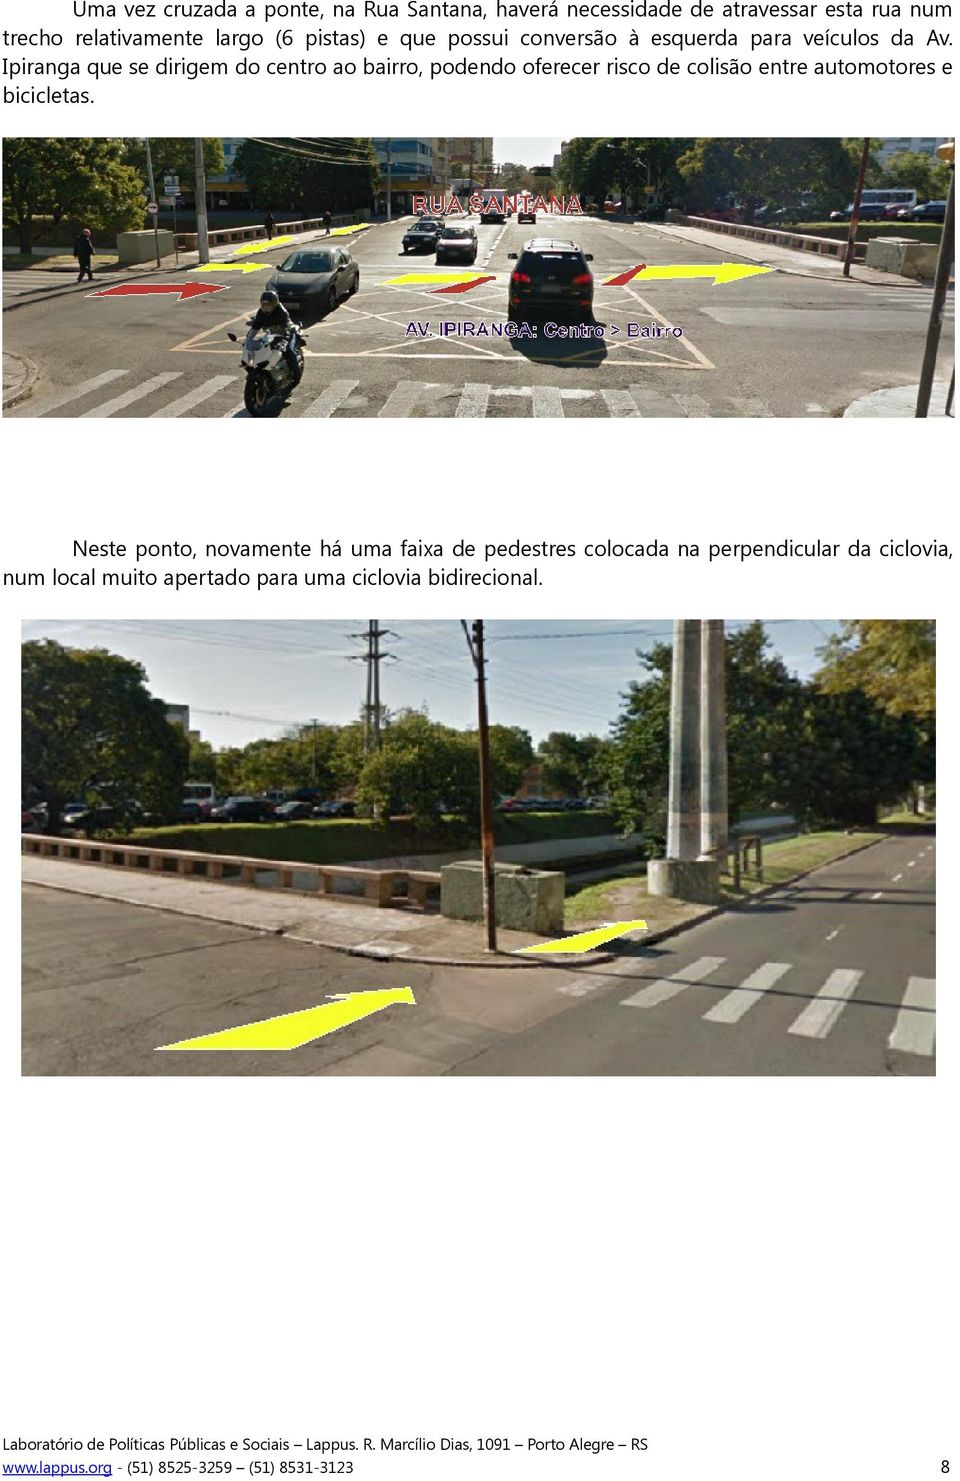 Ipiranga que se dirigem do centro ao bairro, podendo oferecer risco de colisão entre automotores e bicicletas.